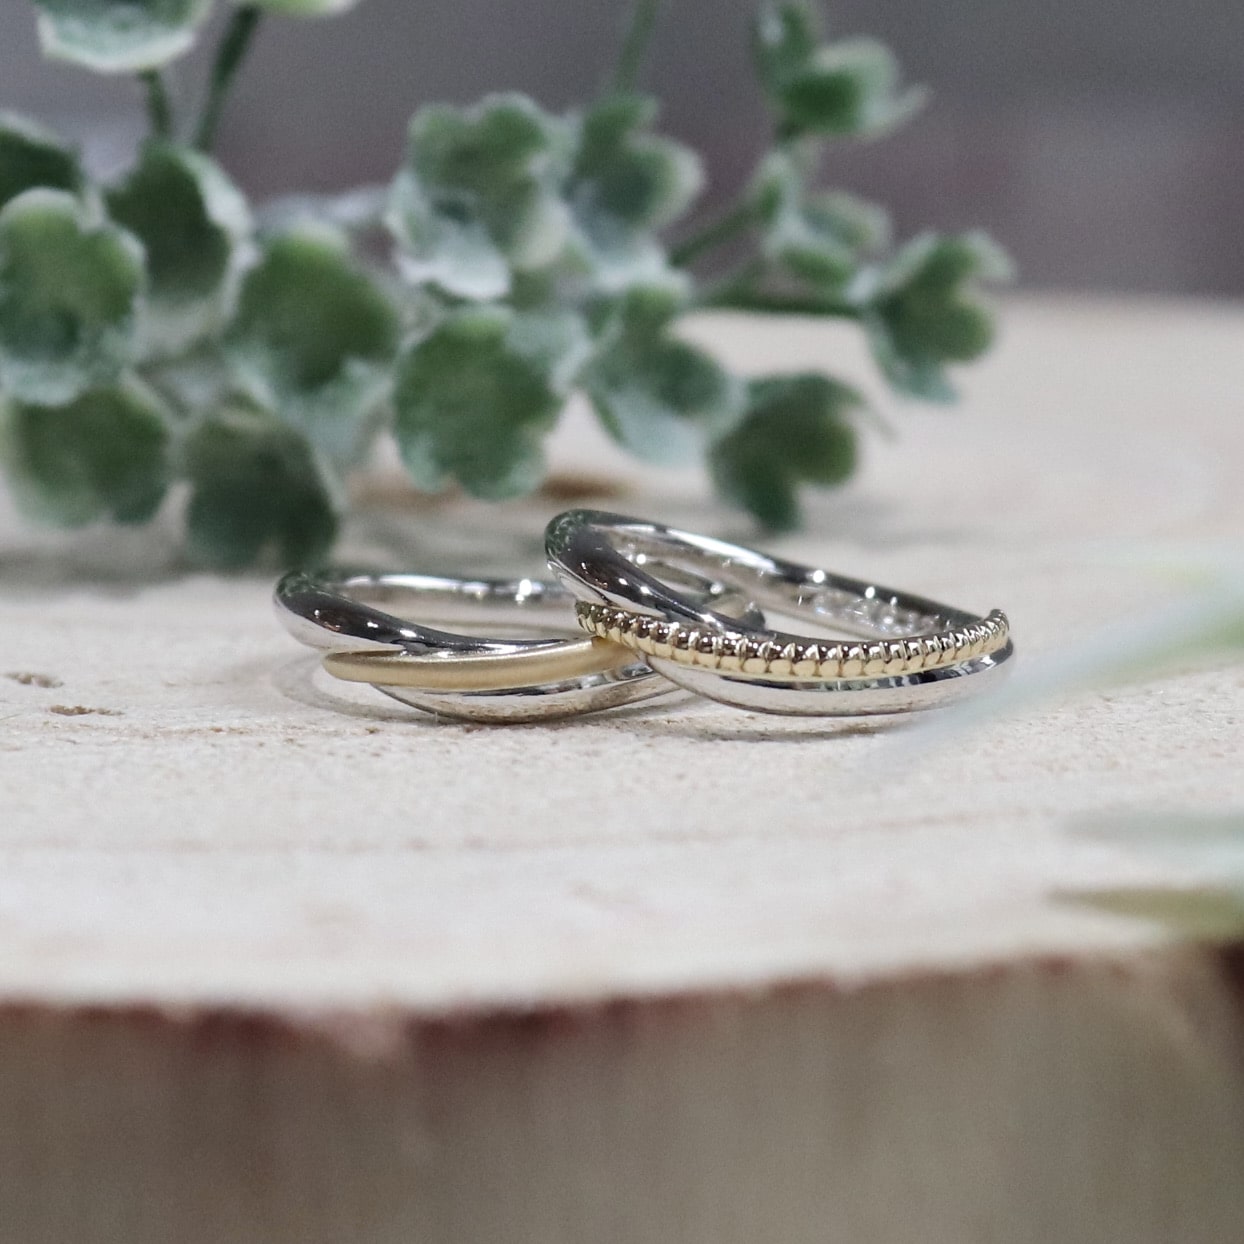 2つの素材を組み合わせたカーブの結婚指輪